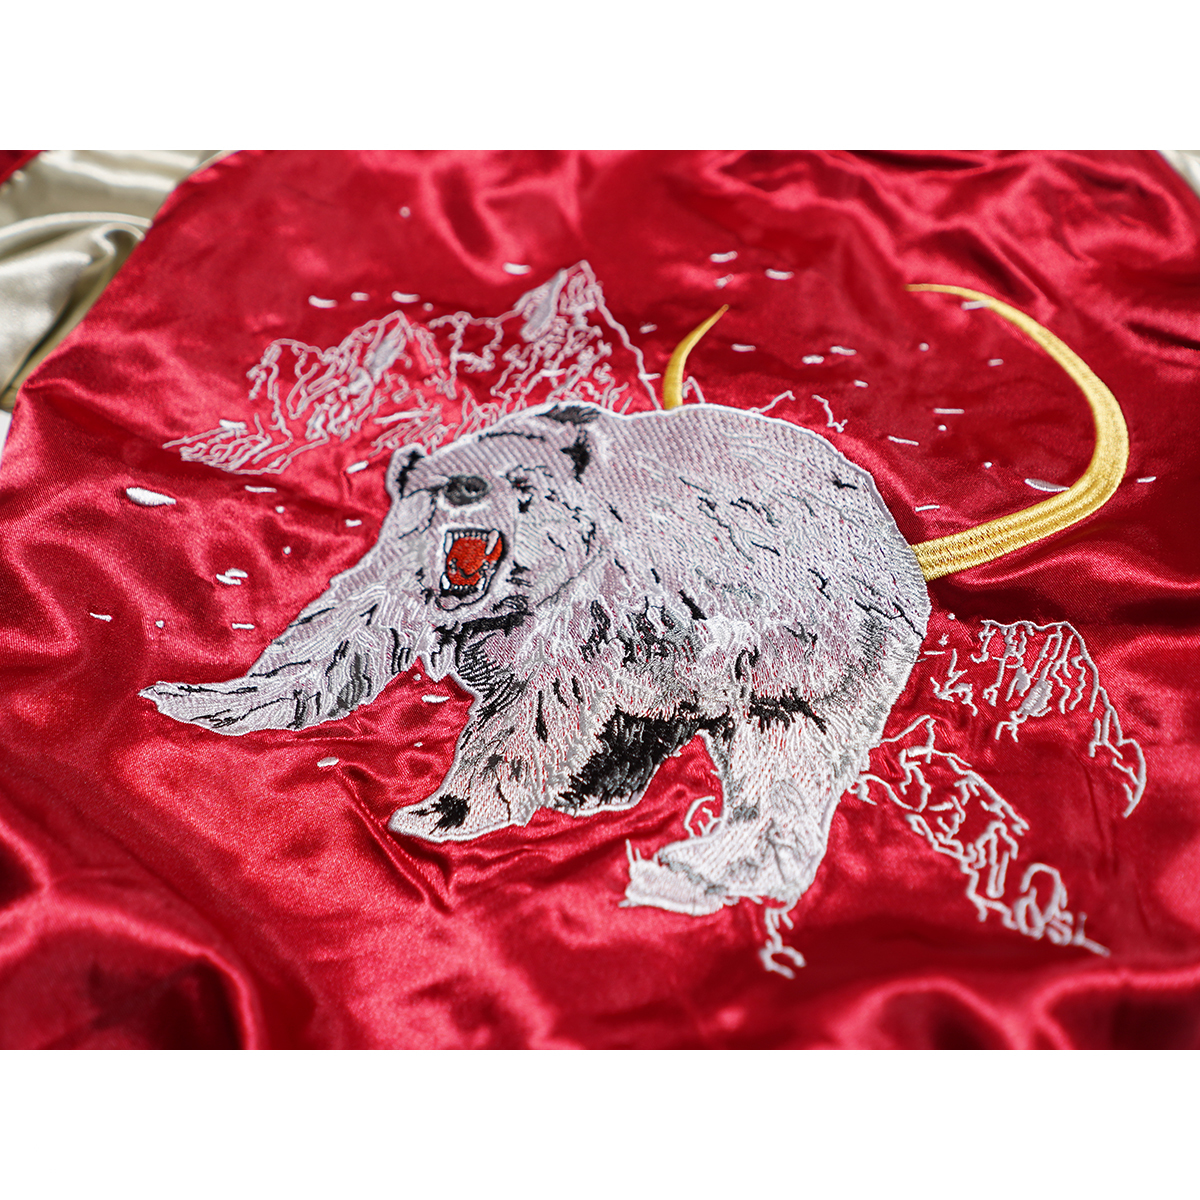 【新品】スカジャン スーベニアジャケット ■ Mサイズ / レッド赤 熊 ■ 和柄 刺繍 サテン SKAb960_画像4